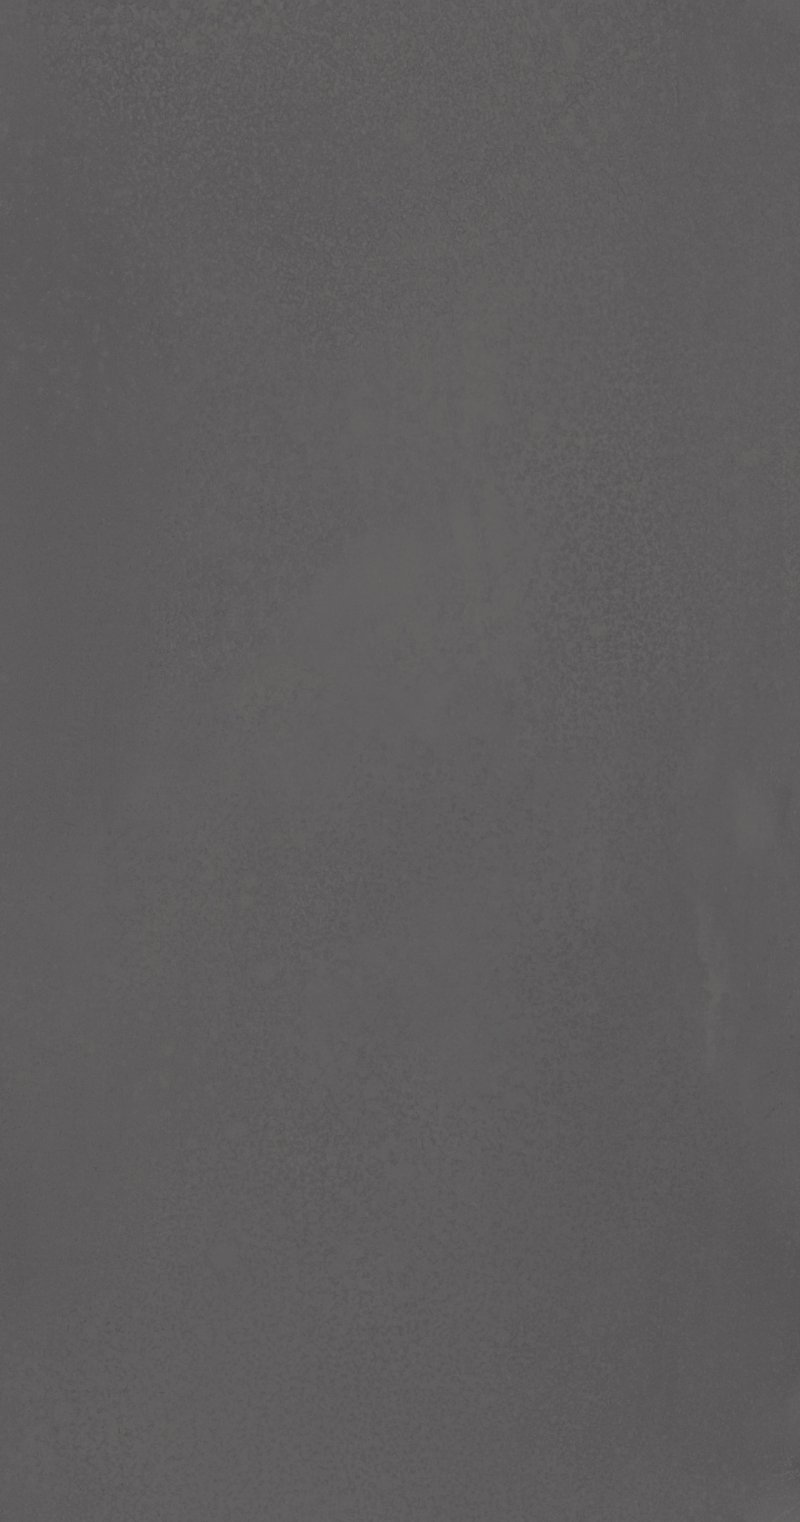 惠達瓷磚圖片  質繪磚緞光釉系列產品細節圖_9